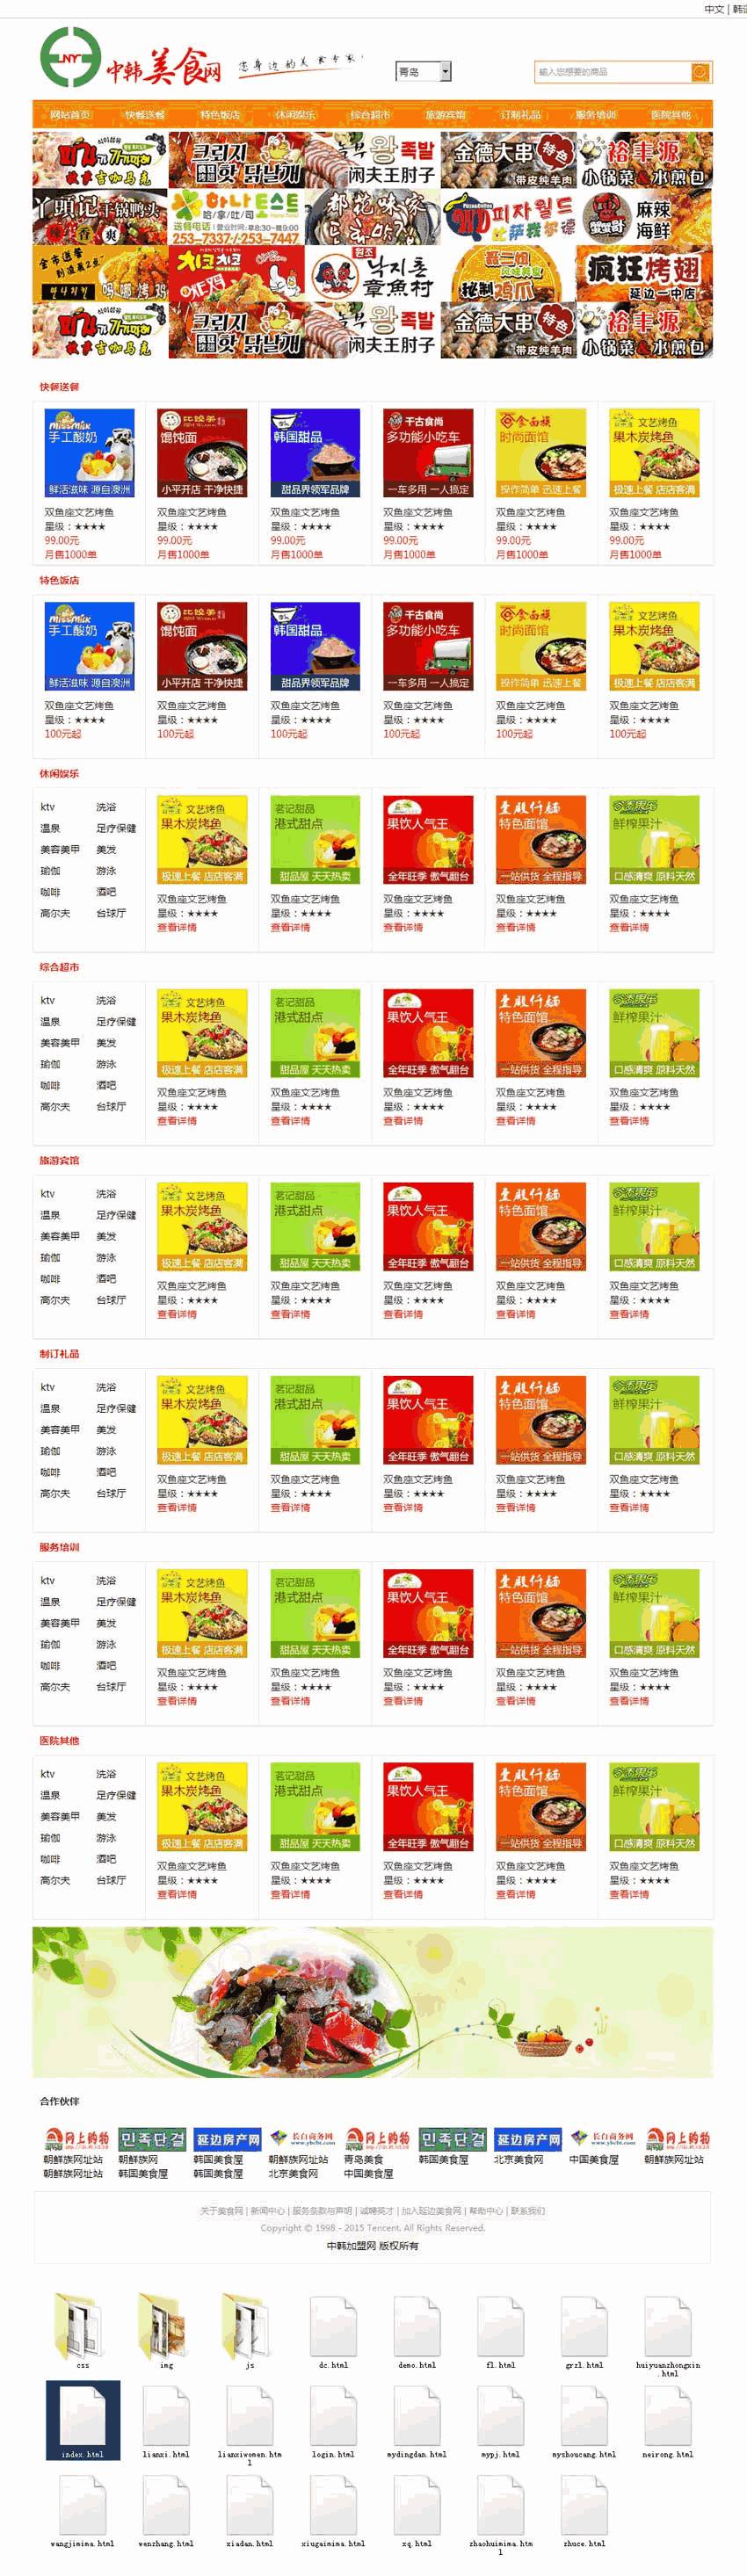 中韩美食加盟手机网站WordPress模板主题演示图